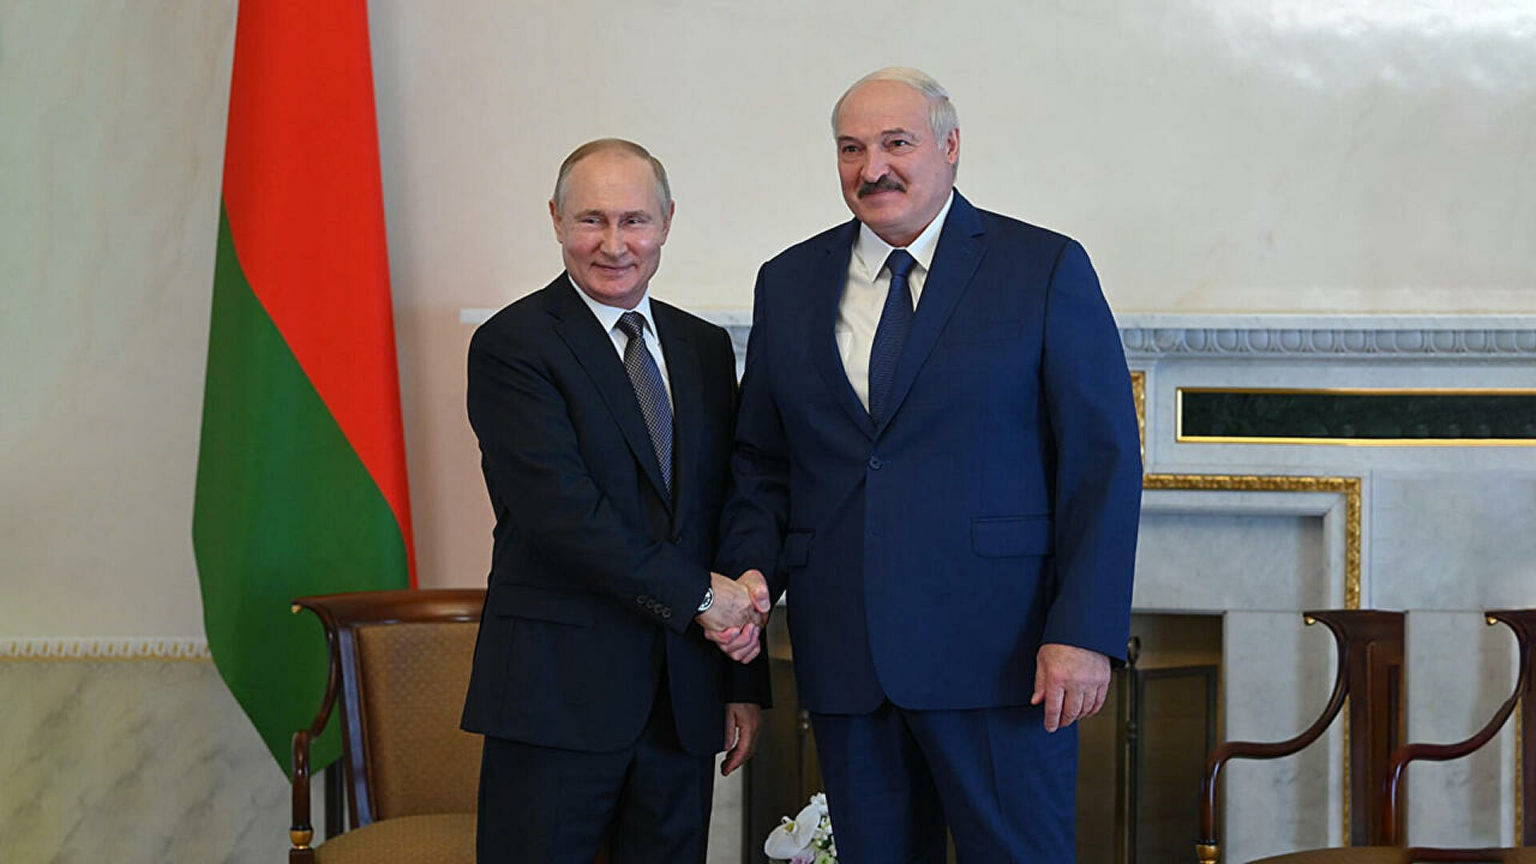 Мы с ним на "ты" - Лукашенко рассказал о взаимоотношениях с Путиным